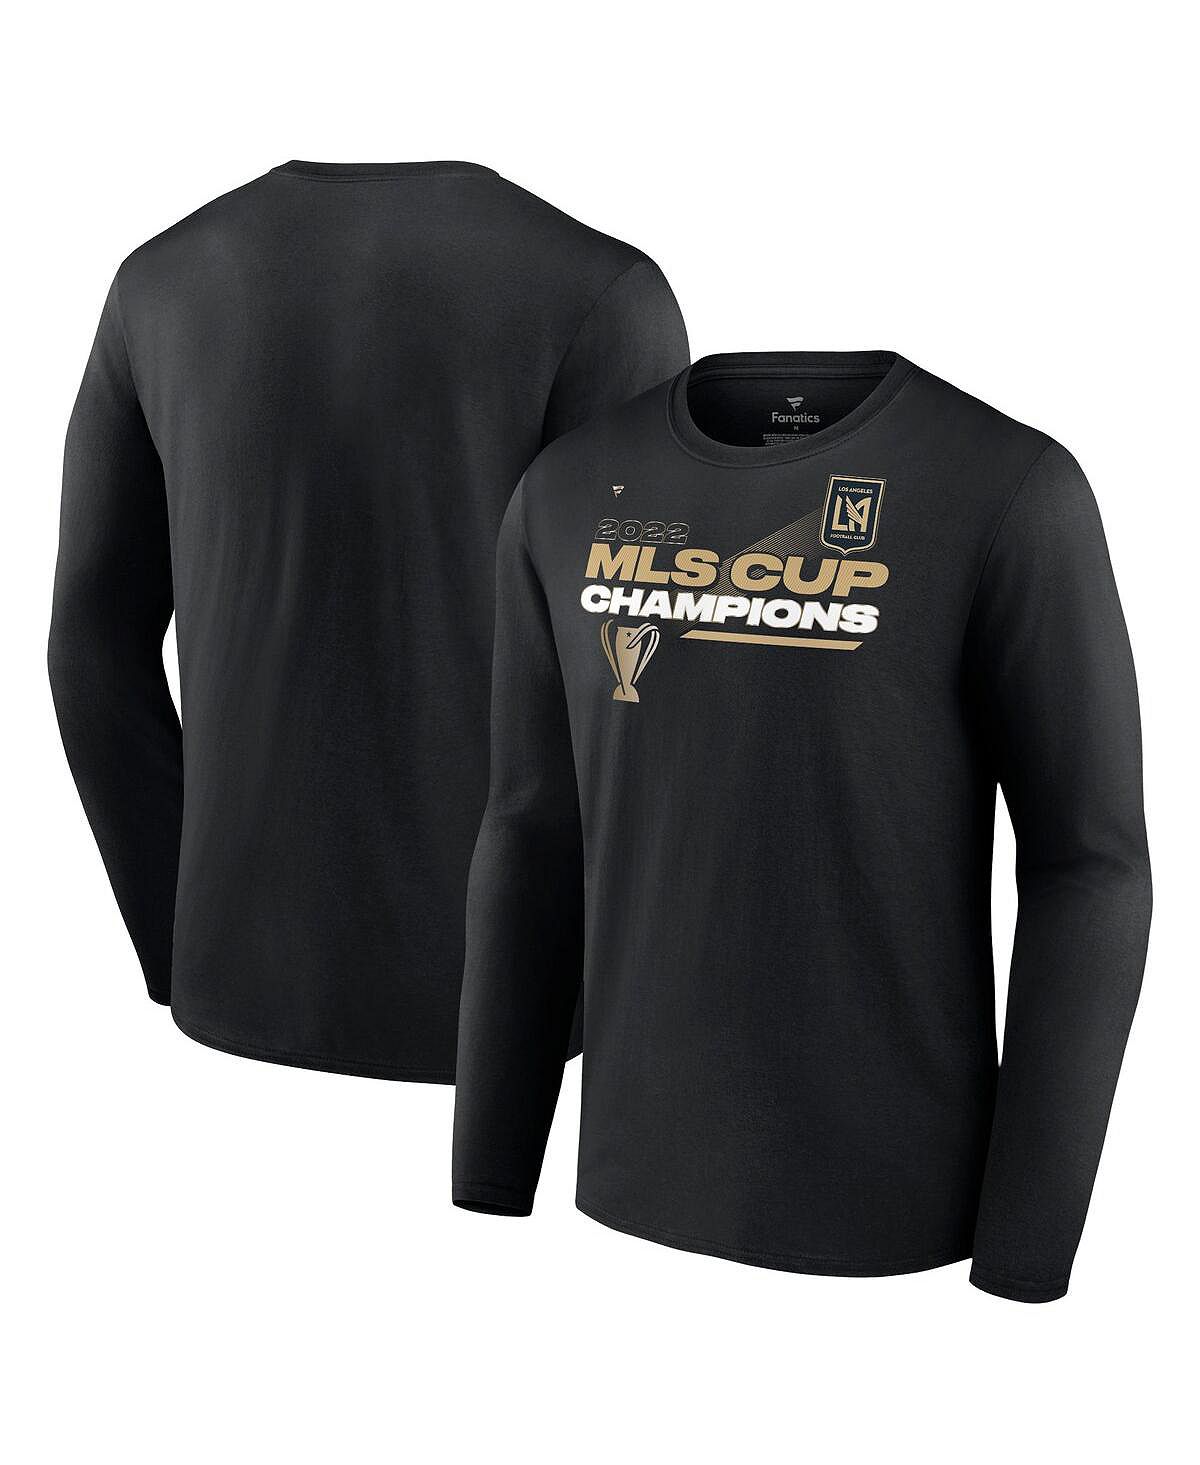 Мужская фирменная черная футболка с длинным рукавом в раздевалке lafc 2022 mls cup champions Fanatics, черный